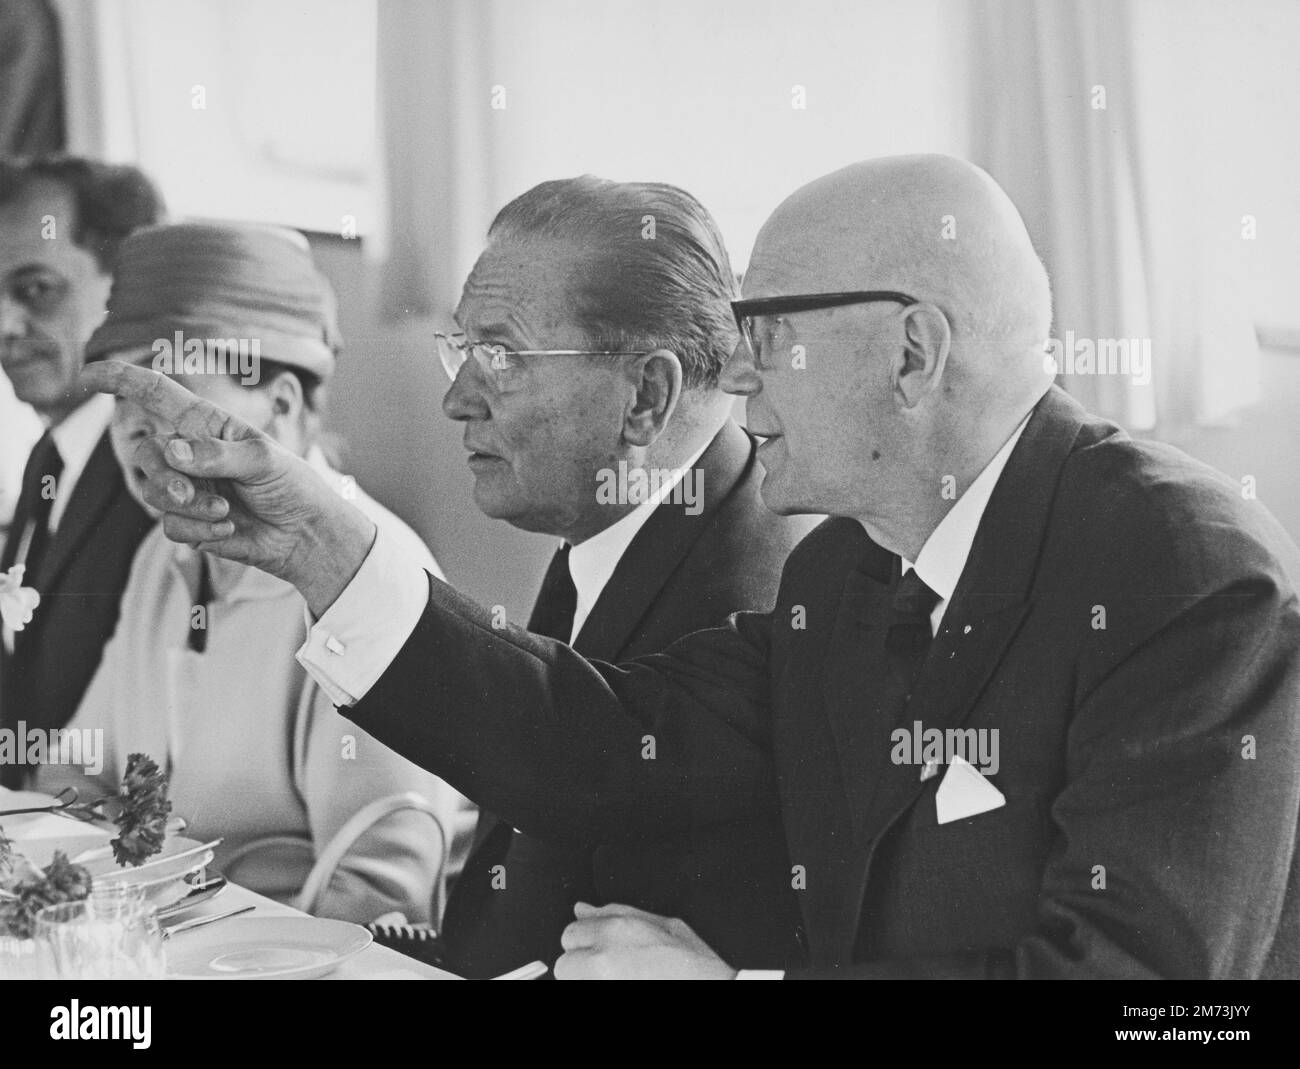 HELSINKI, FINNLAND - 1964 - Jugoslawischer Präsident Josip Broz Tito und finnischer Präsident Urho Kekkonen in Helsinki, Finnland während eines offiziellen Staates Stockfoto